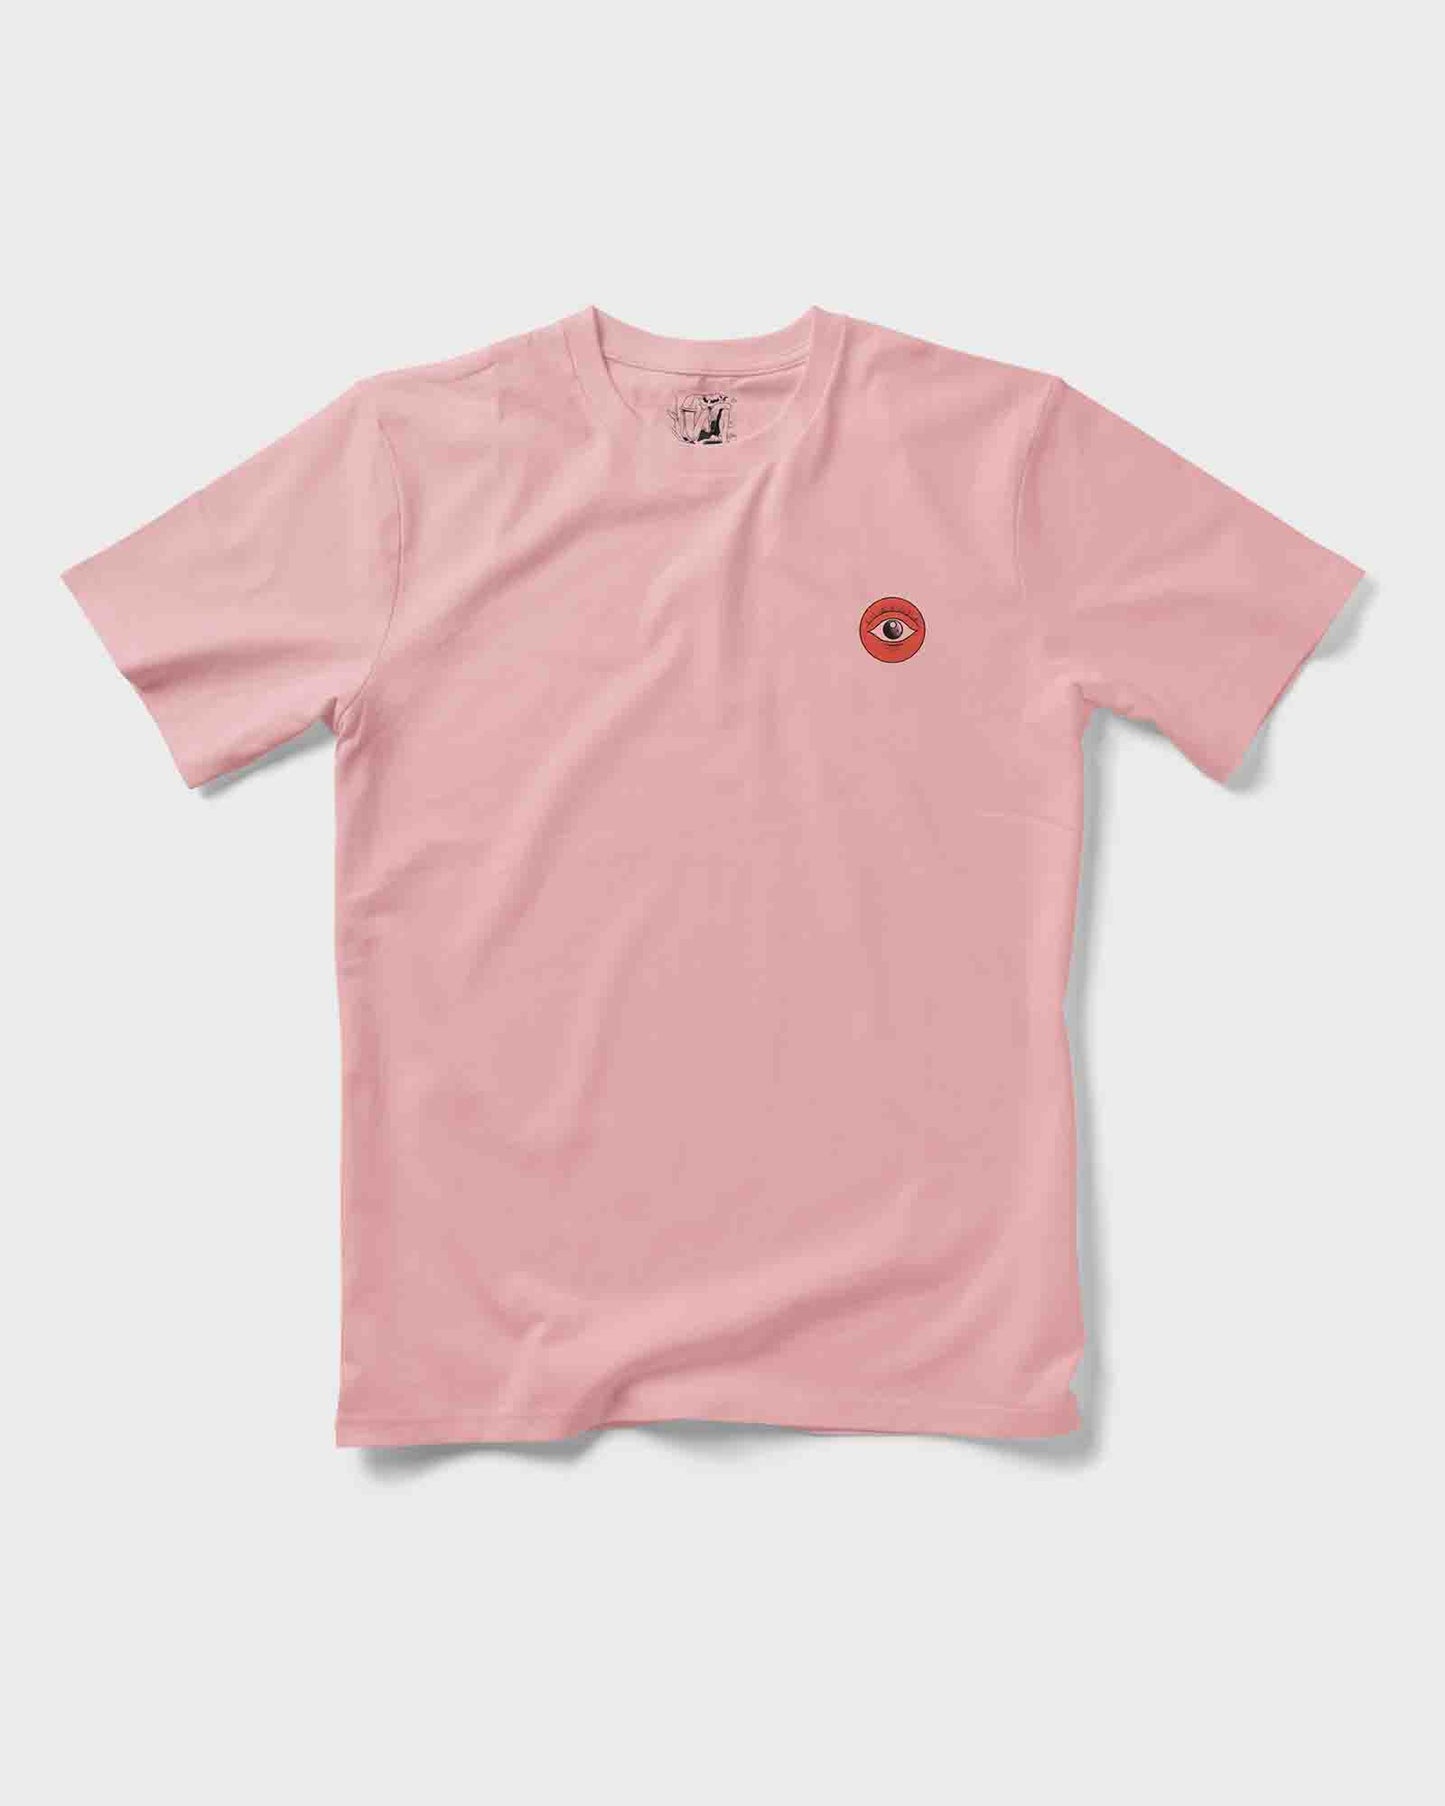 Morning Sun T-Shirt Unisex Front & Backprint